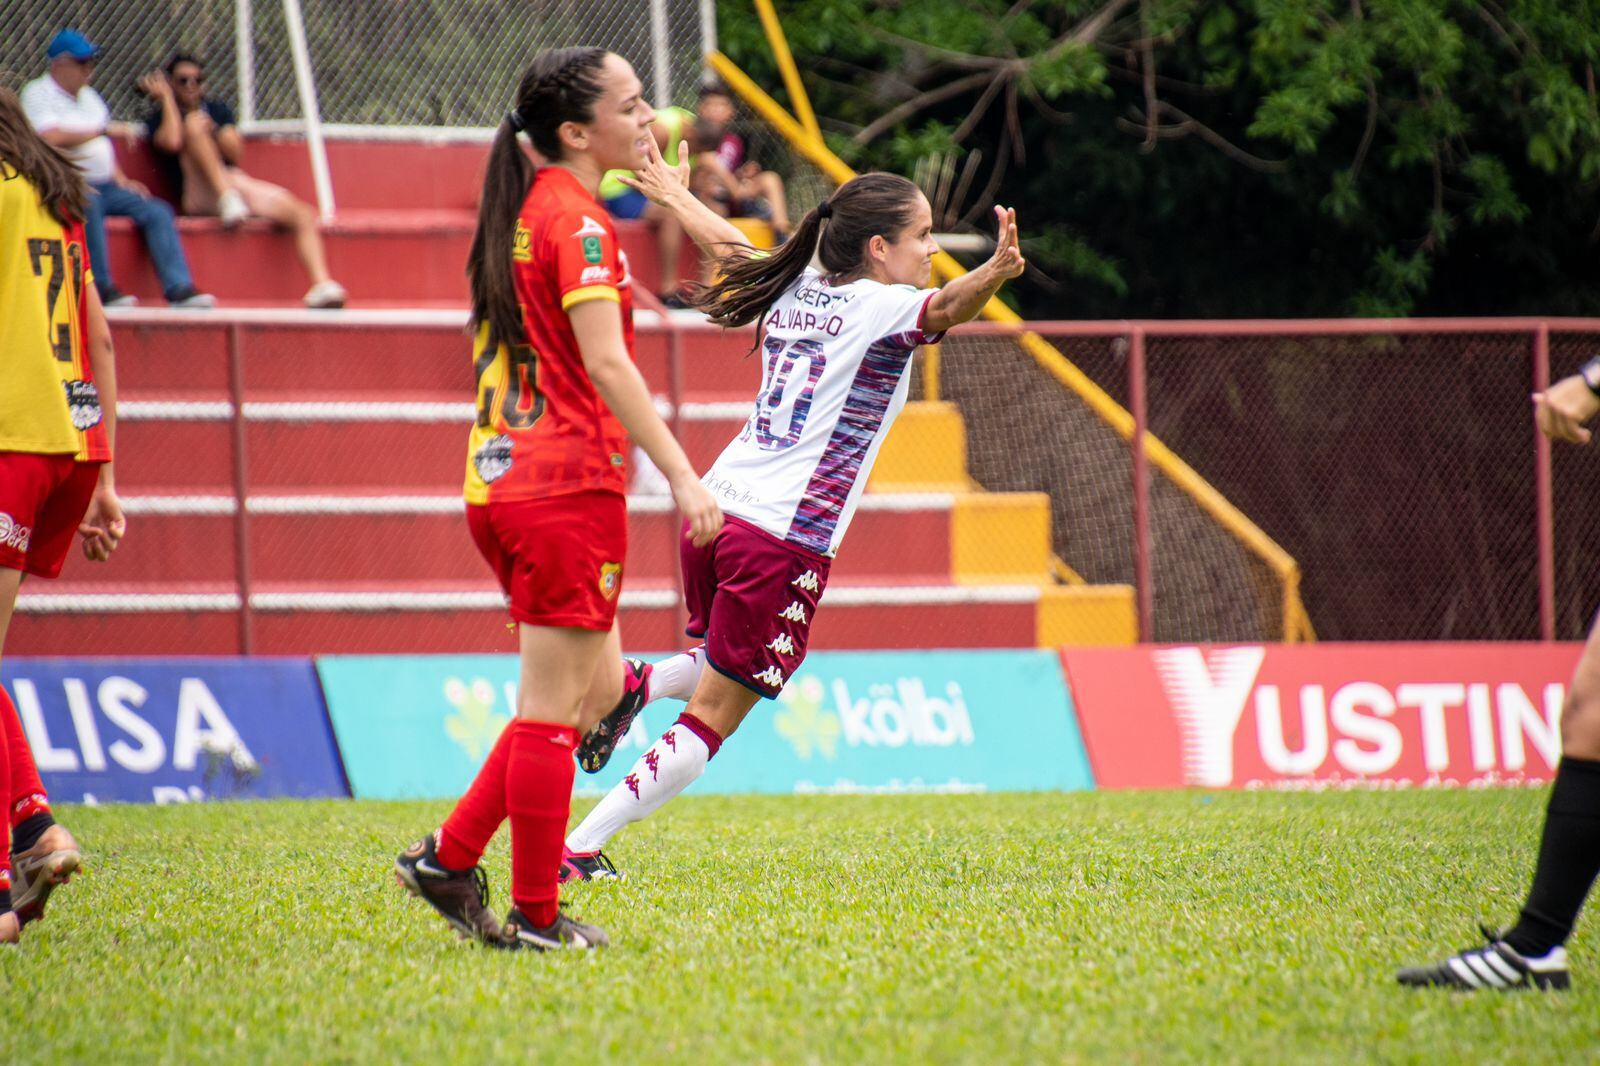 Katherine Alvarado, capitana de Saprissa, se lució con un golazo de media distancia. Saprissa apaleó 5-0 a Herediano. (Foto Prensa de Saprissa).